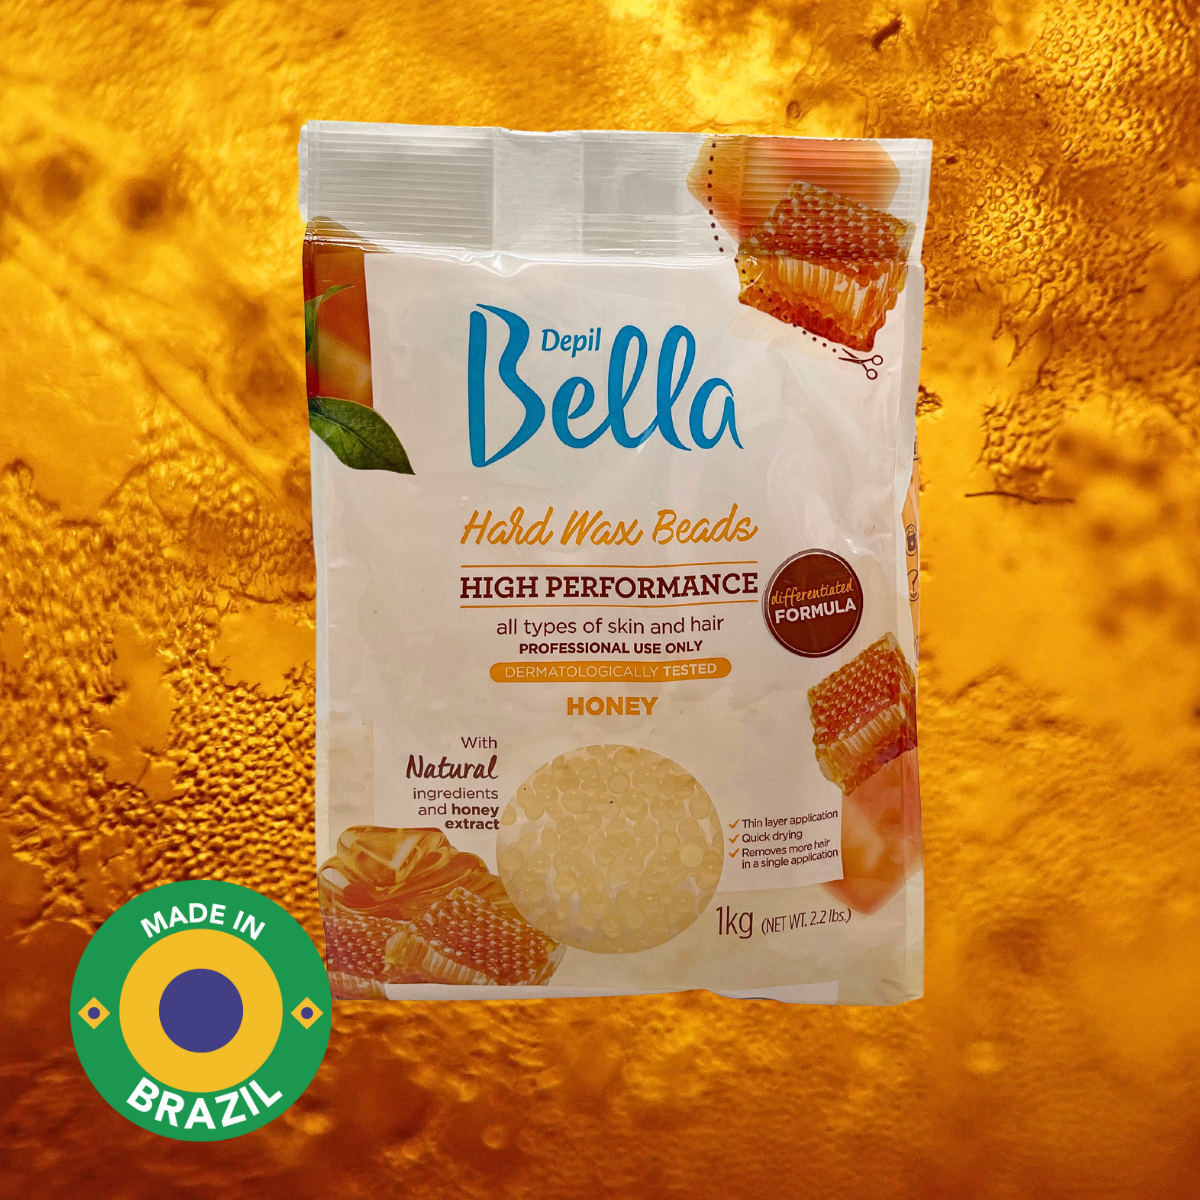 Depil Bella Hard Wax Beads Honey - Depilación profesional, 2.2 lbs